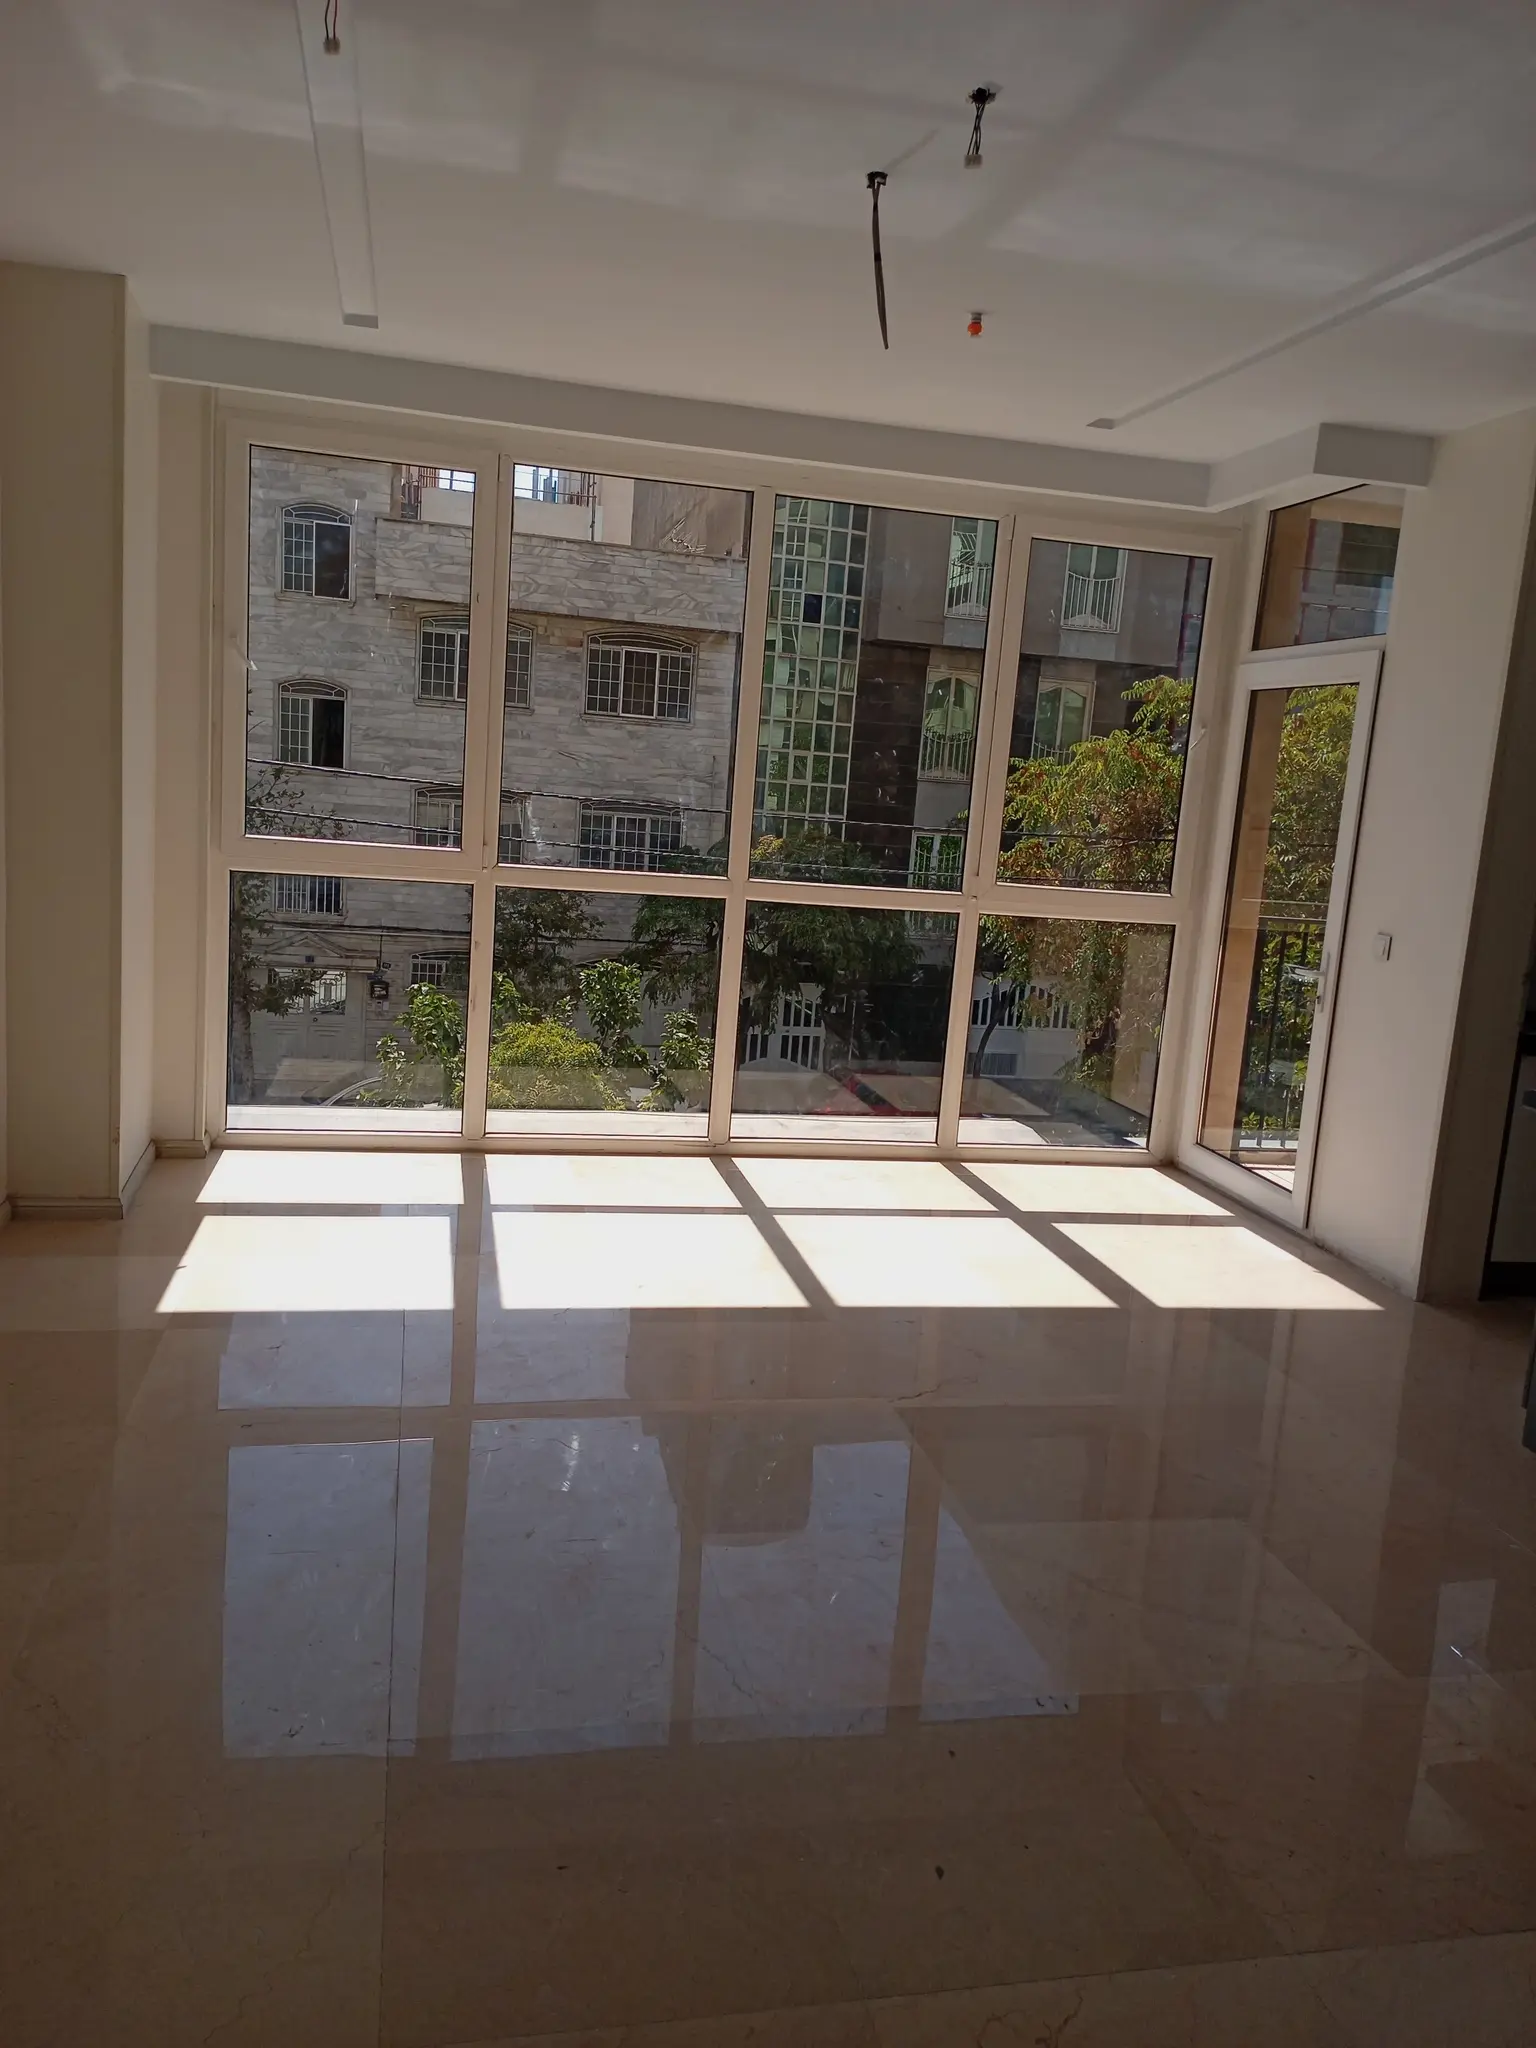  خرید آپارتمان185 متر 3 خواب باز سازی شده در شهرک غرب پیروزان